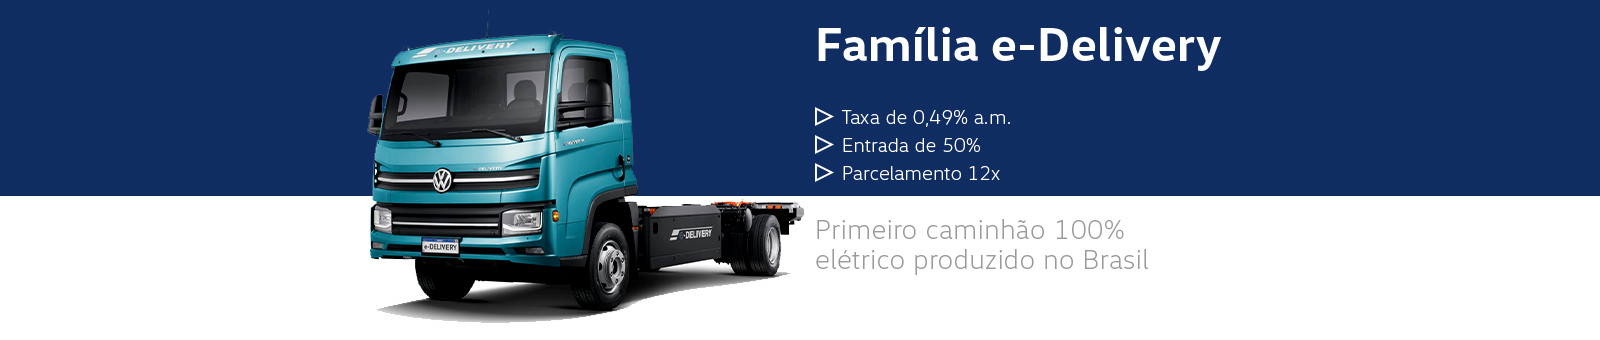 E-Delivery. Primeiro caminhão 100% elétrico produzido no Brasil.